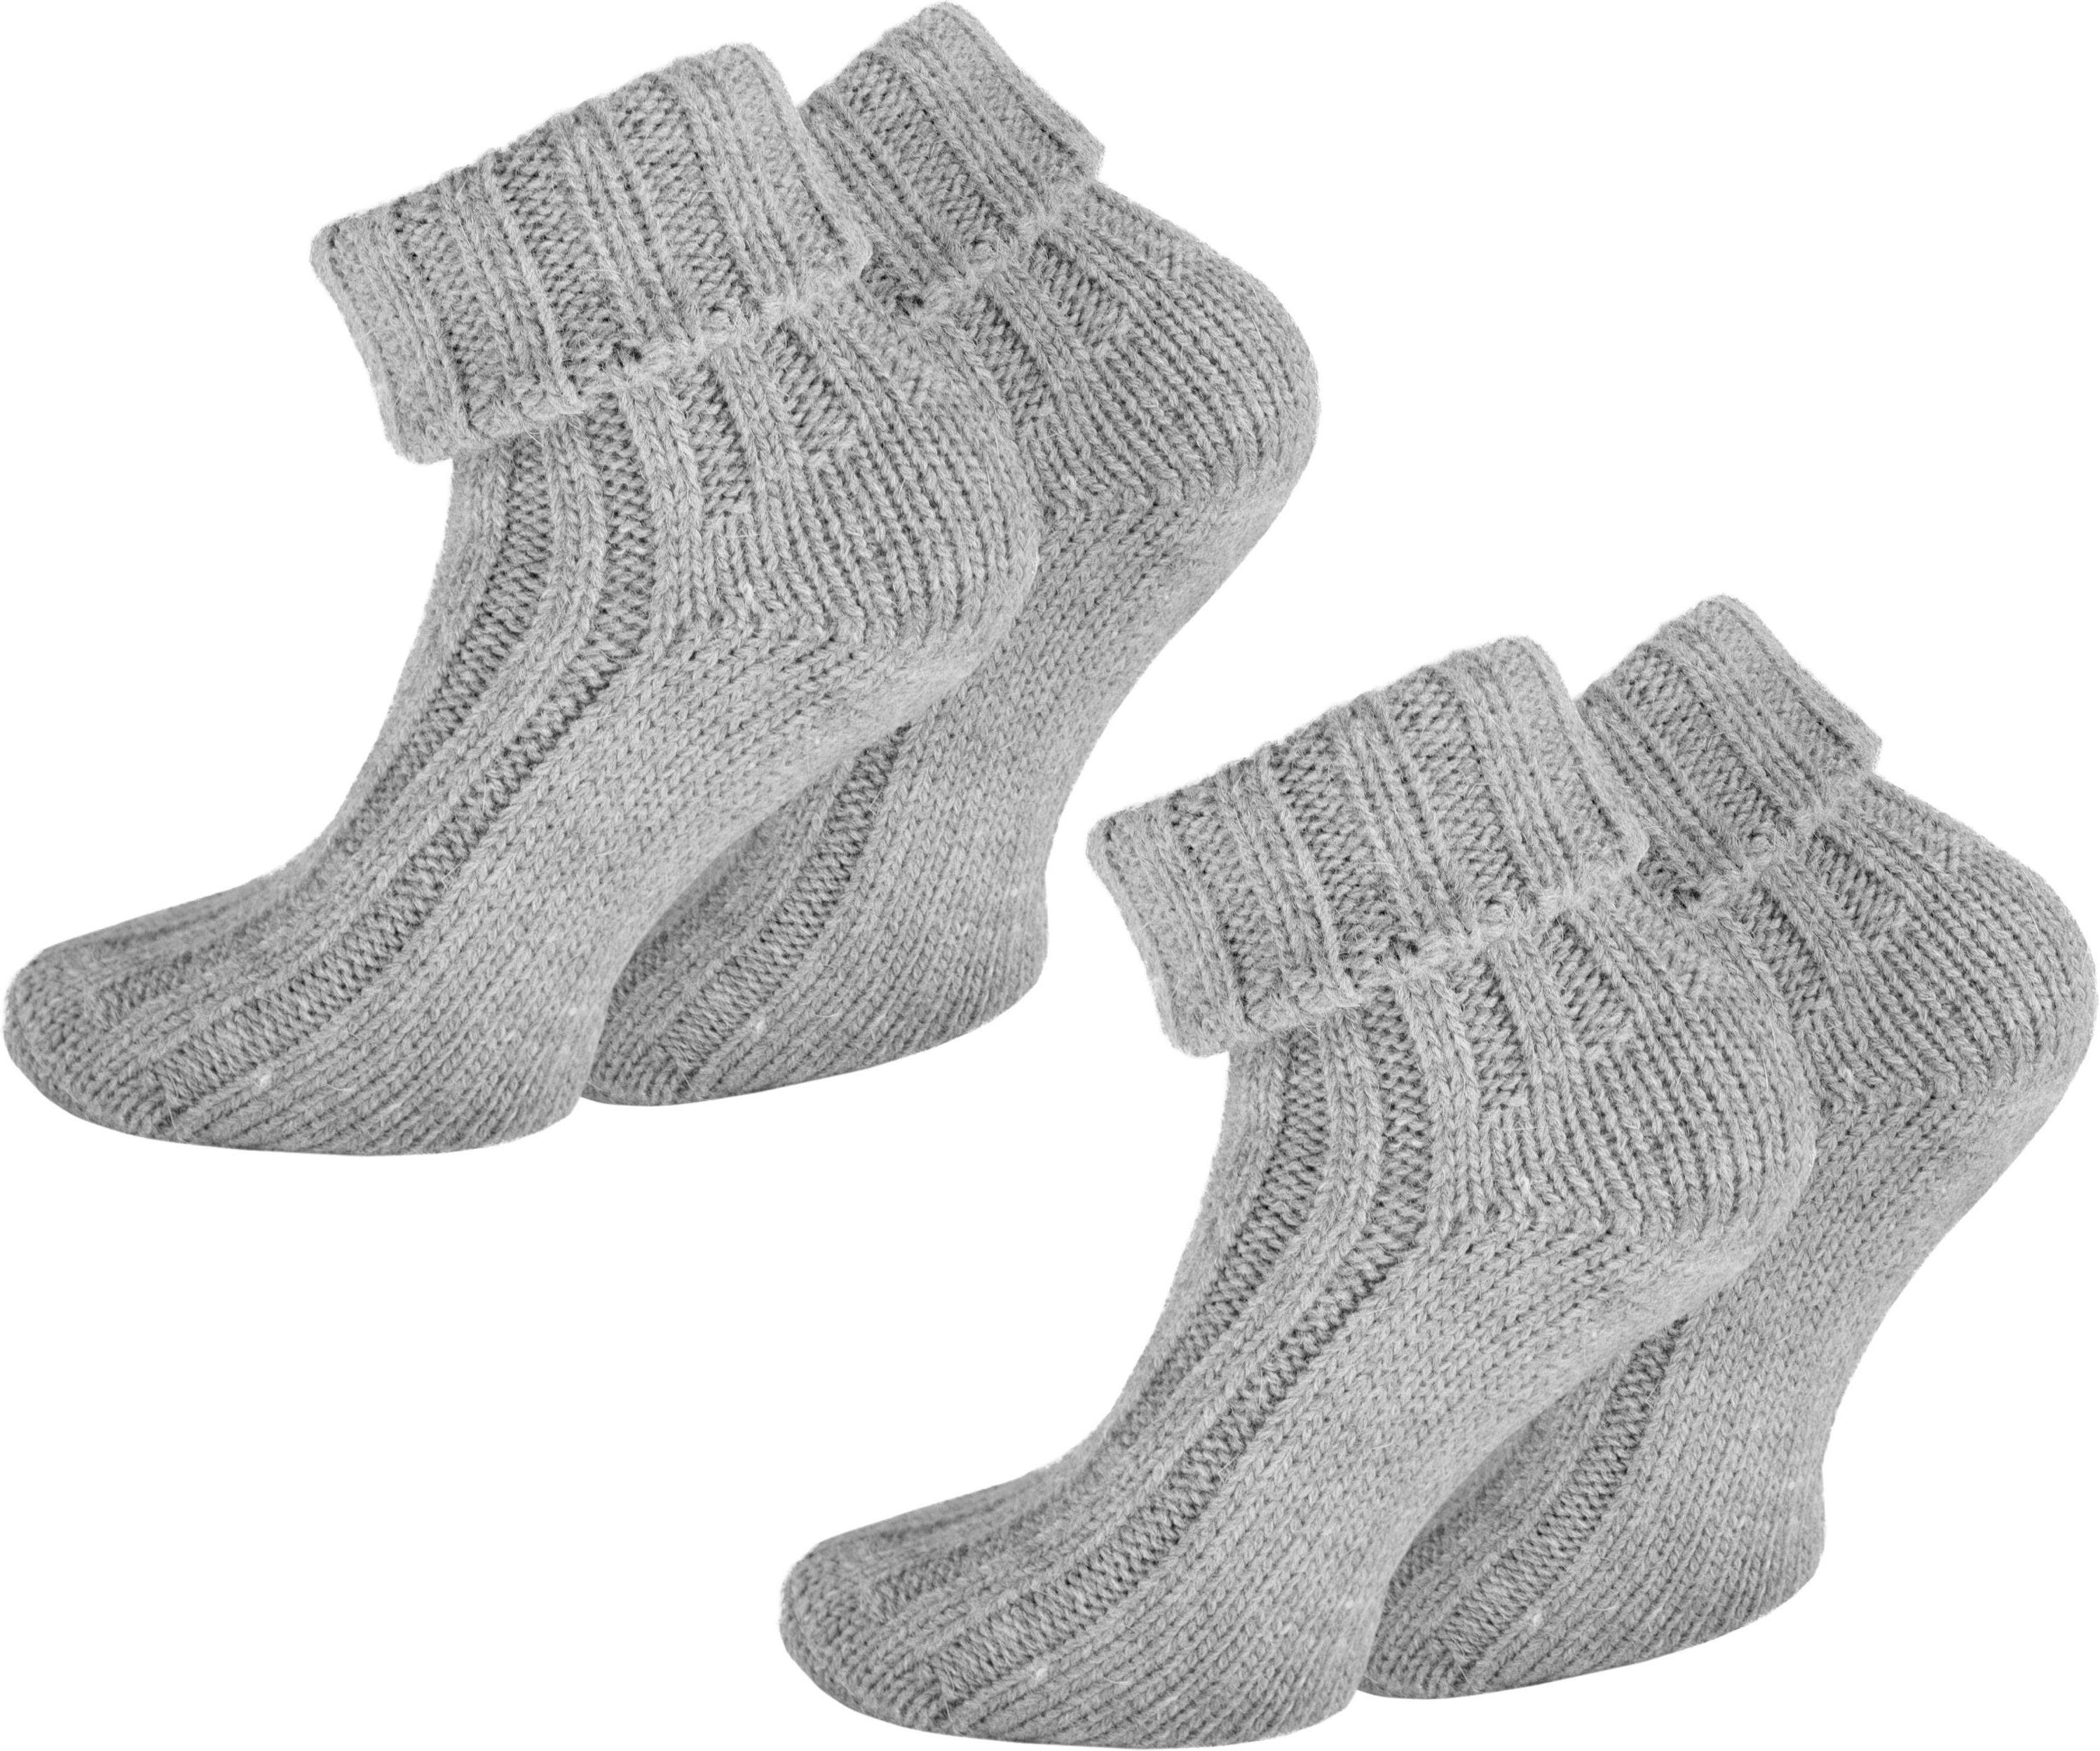 Alpaka-Socken (Set, Alpaka-Wolle 2-Paar, 2 Paar Paar) hochwertige normani mit Thermosocken Hellgrau 2 Umschlag